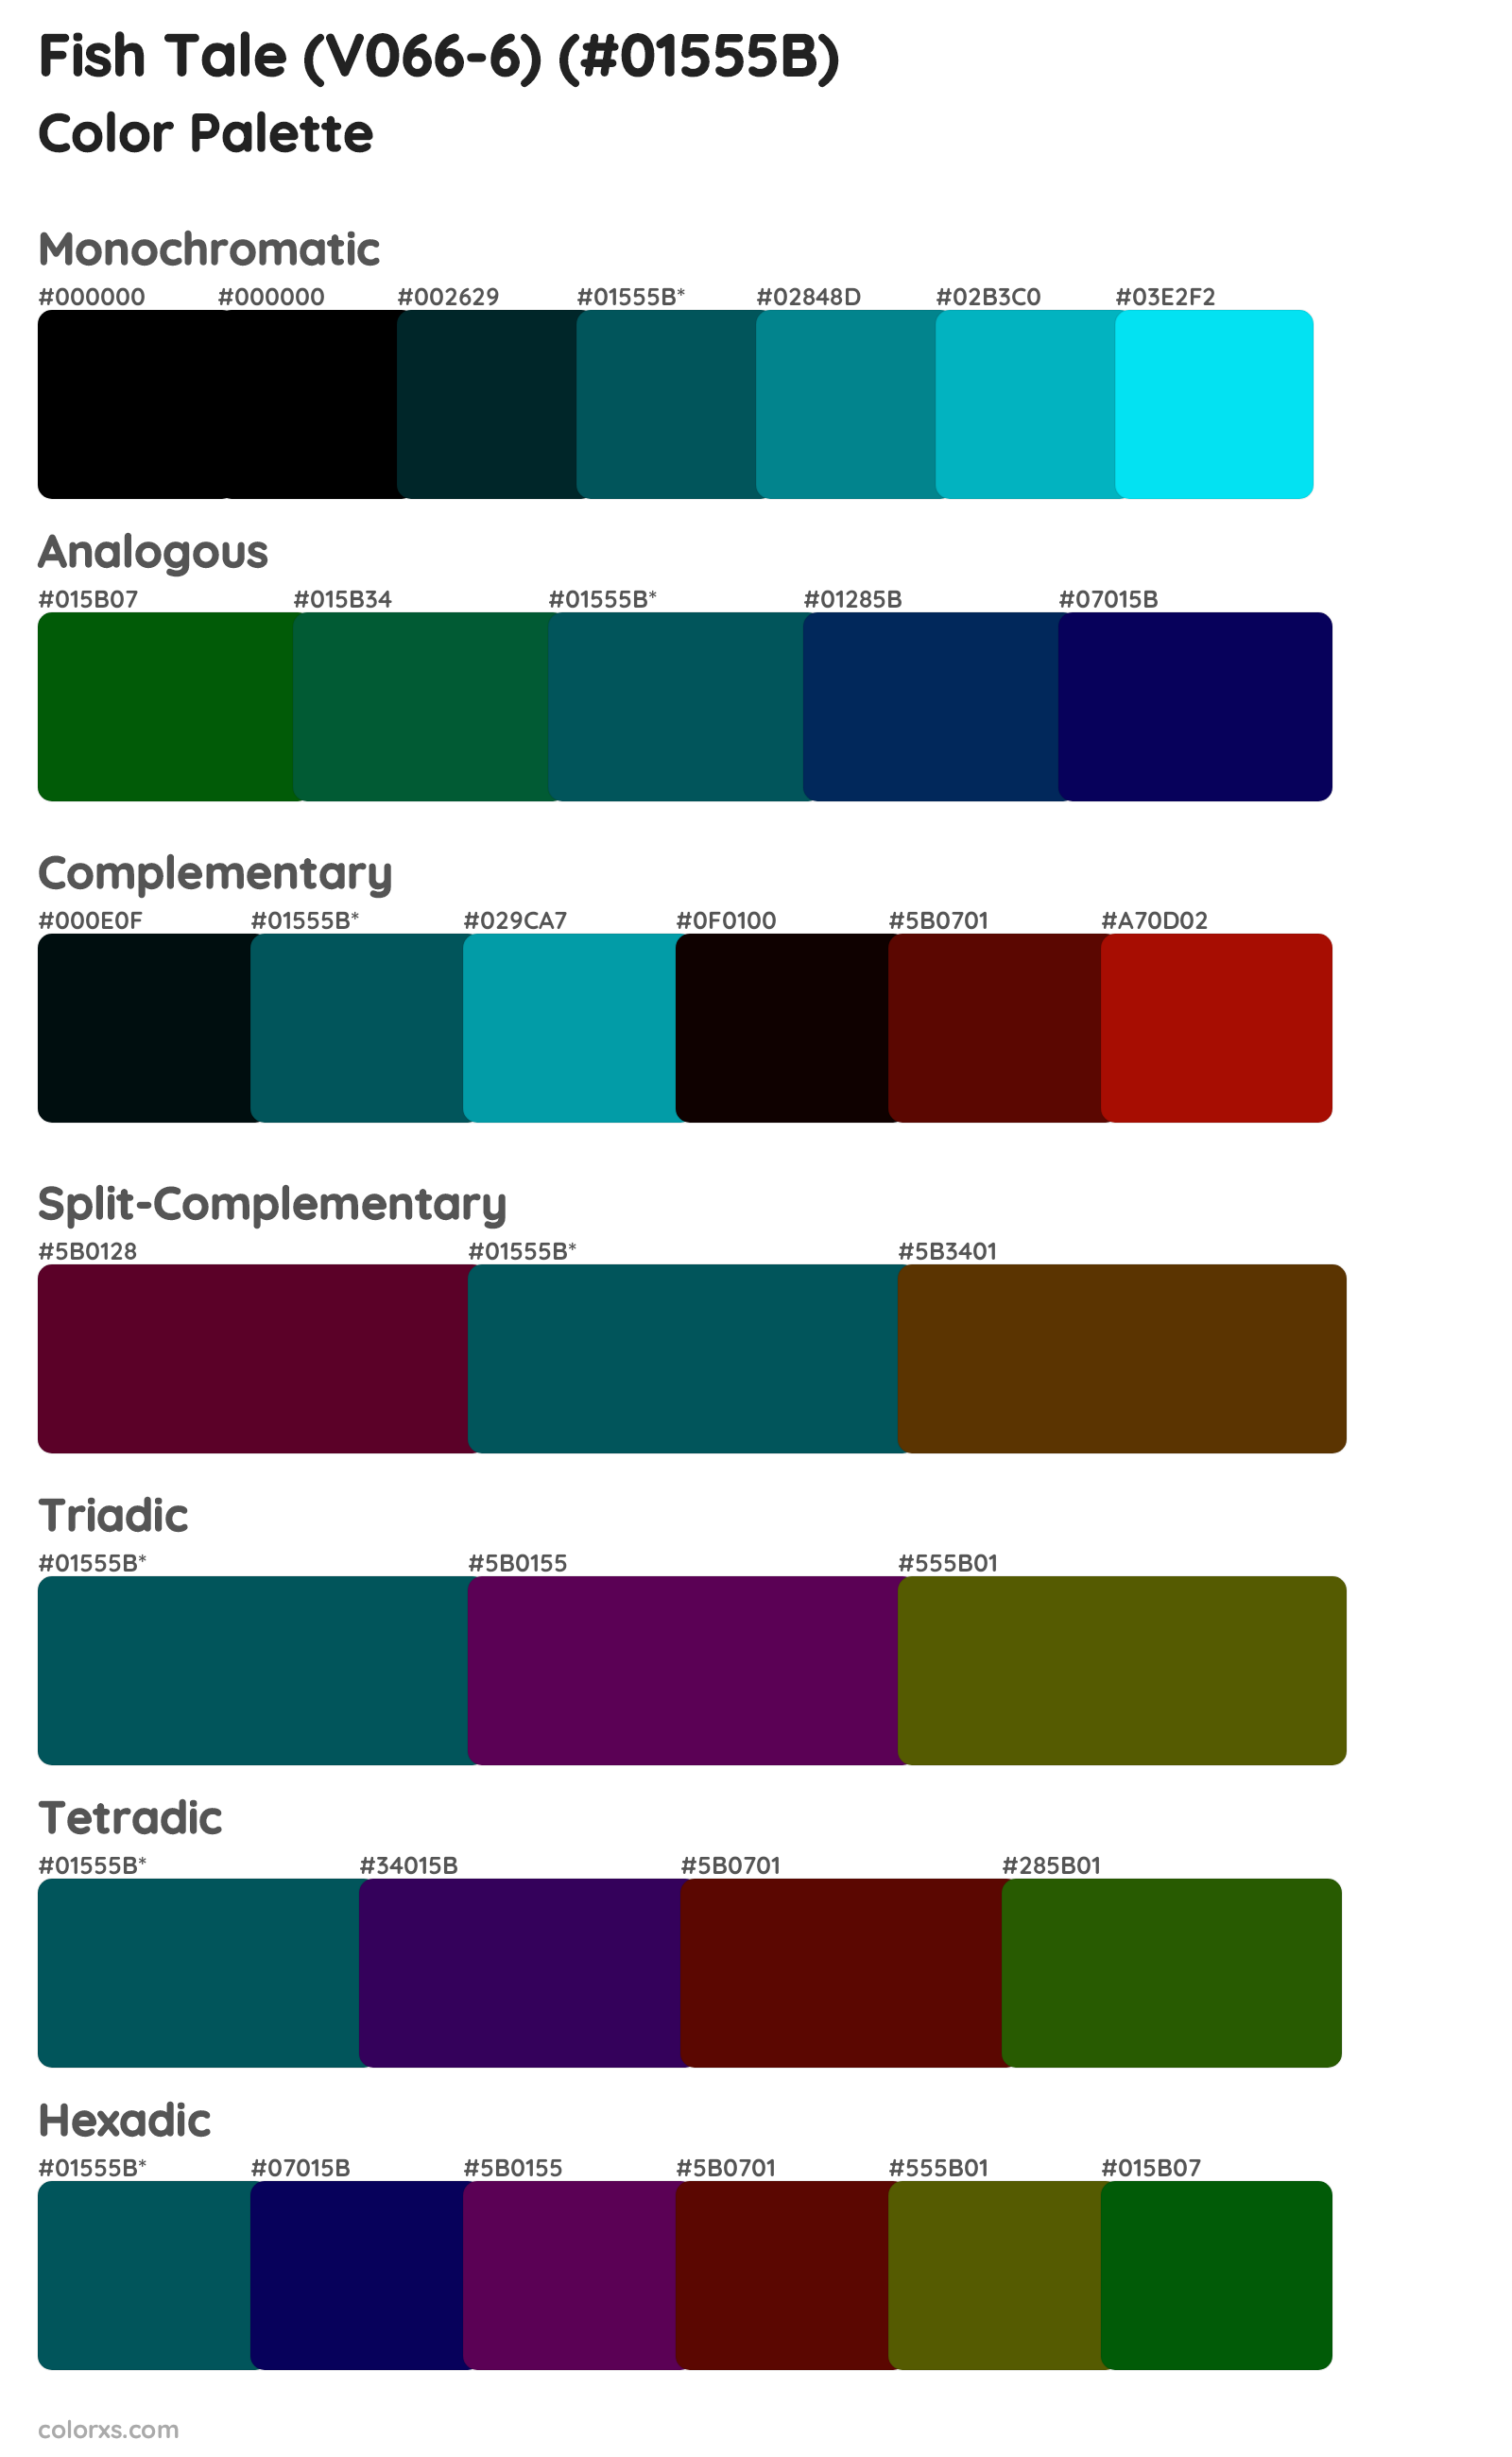 Fish Tale (V066-6) Color Scheme Palettes